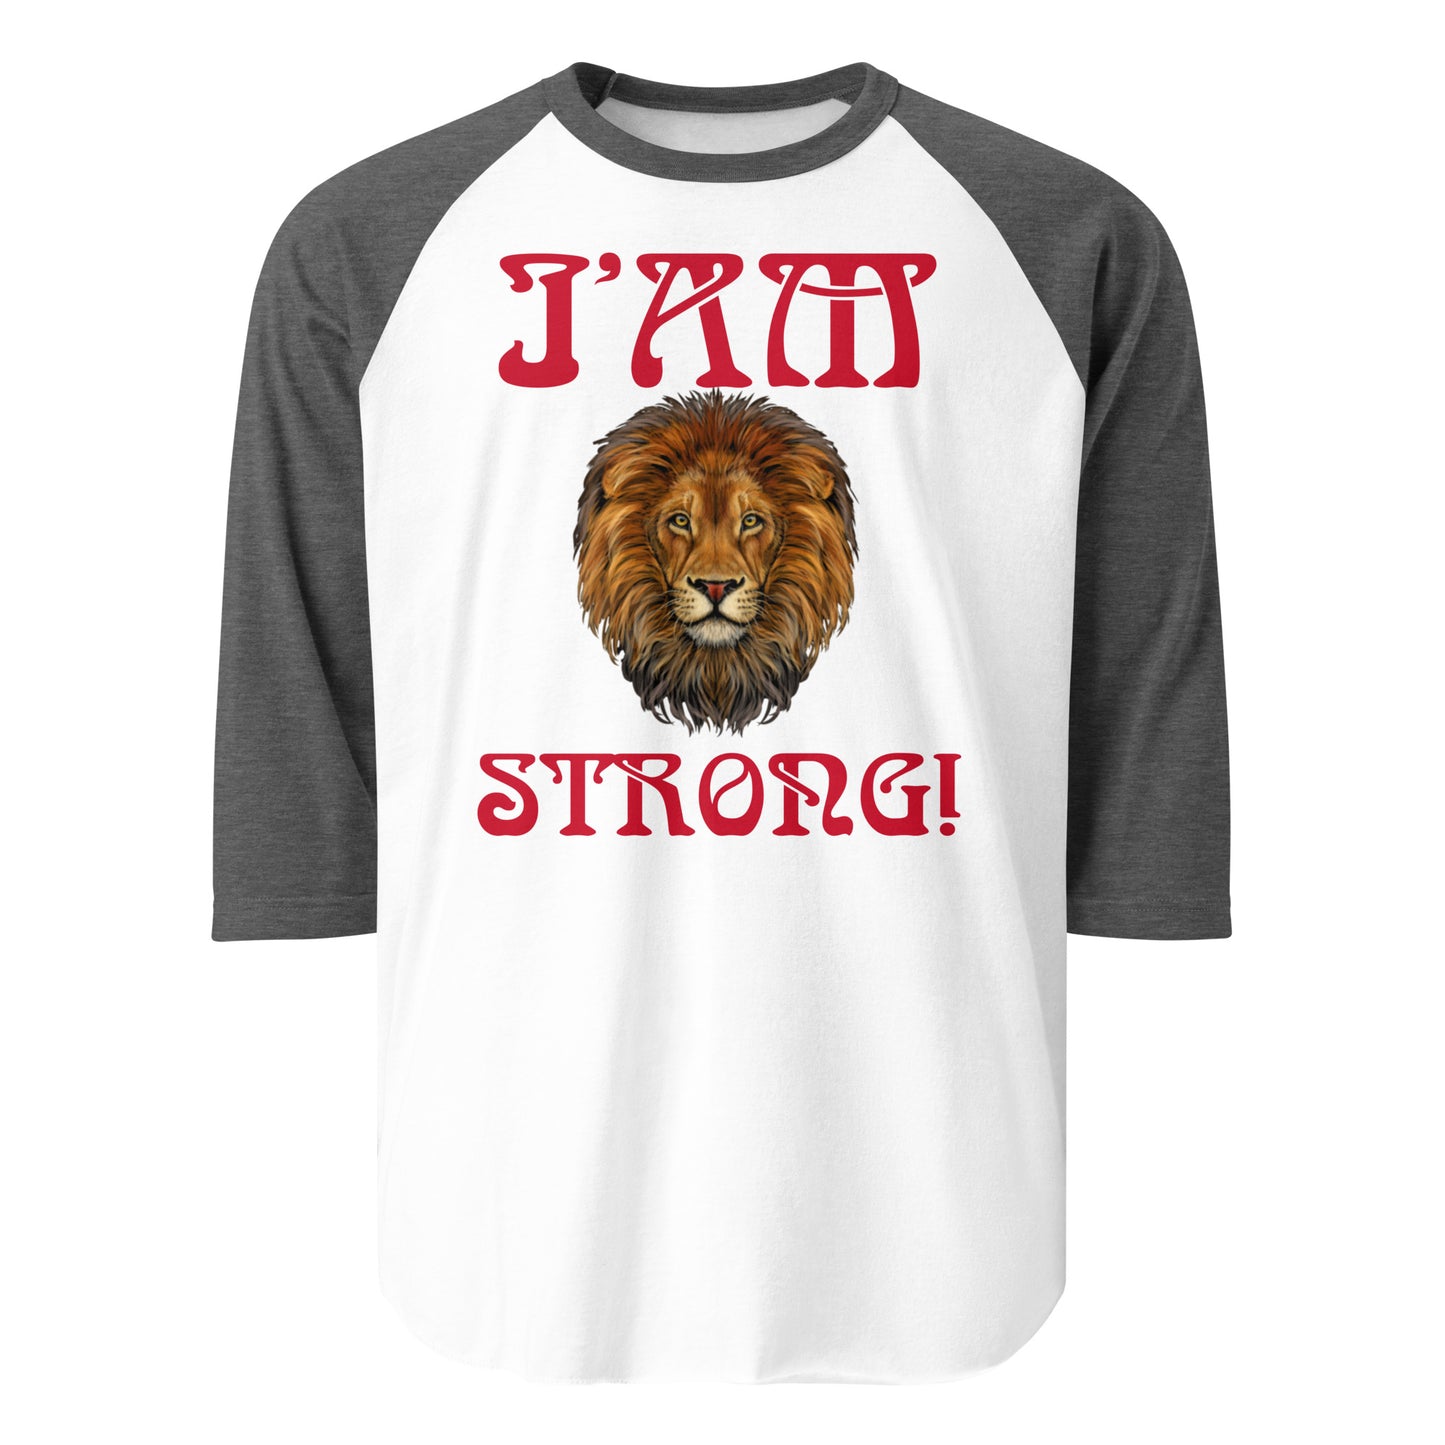 “I’AM STRONG!” 3/4 Sleeve Raglan Shirt W/Red Font